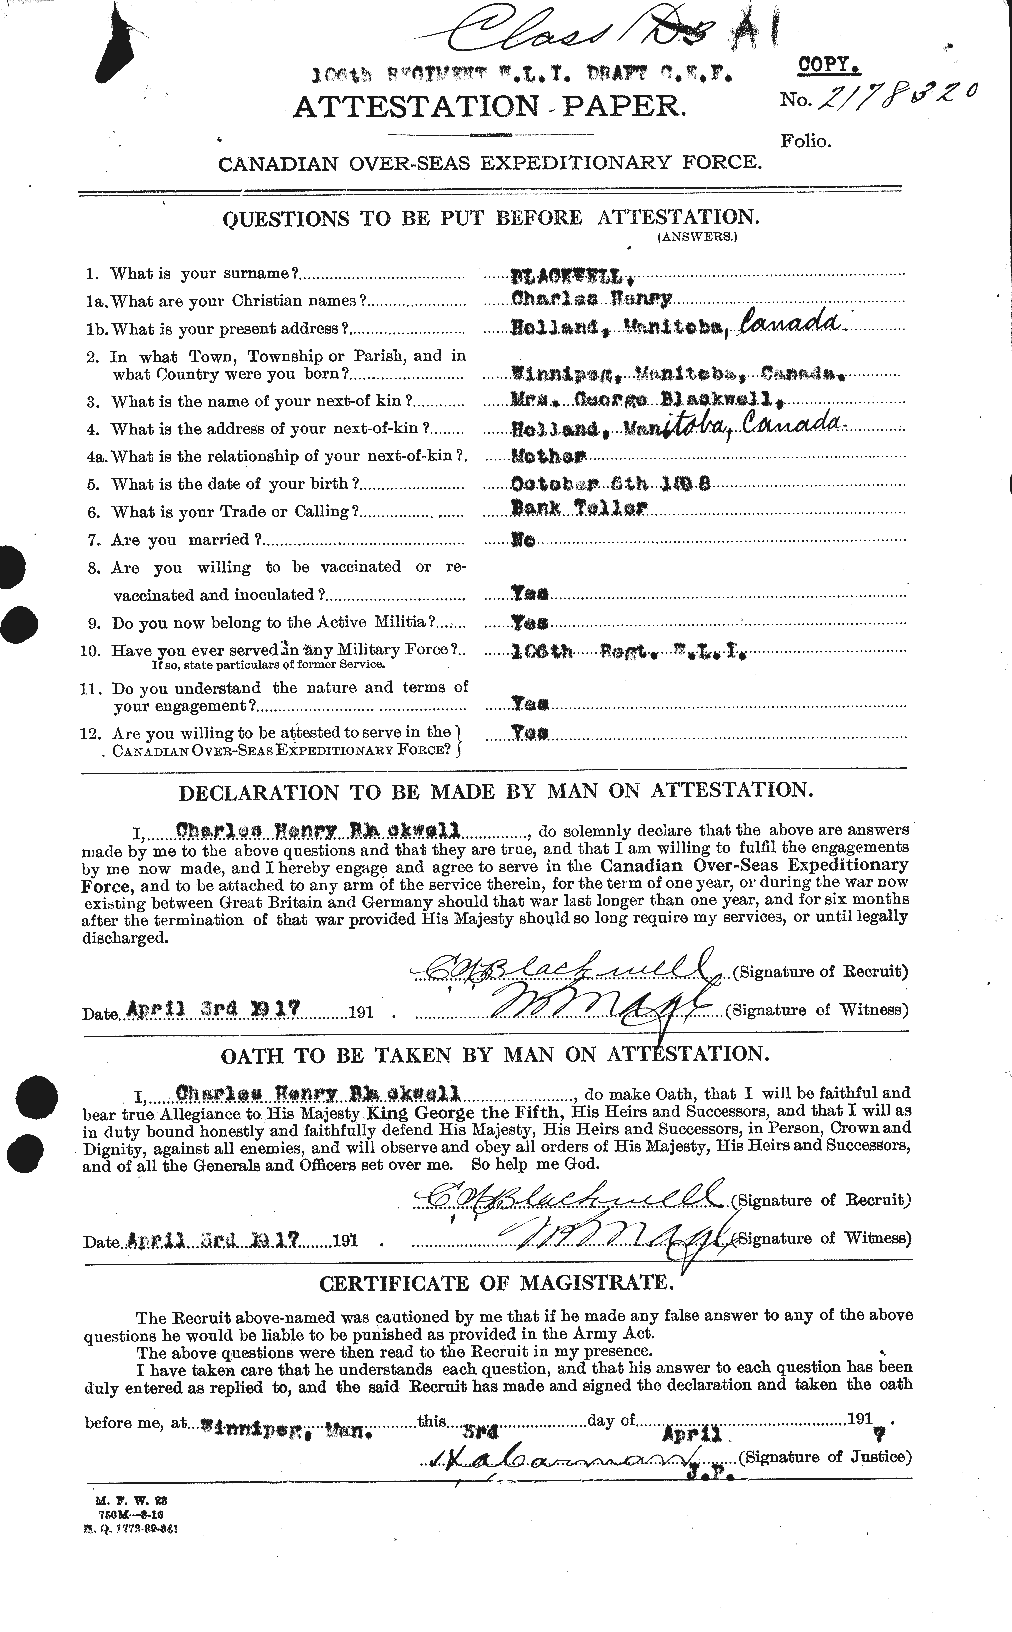 Dossiers du Personnel de la Première Guerre mondiale - CEC 244473a